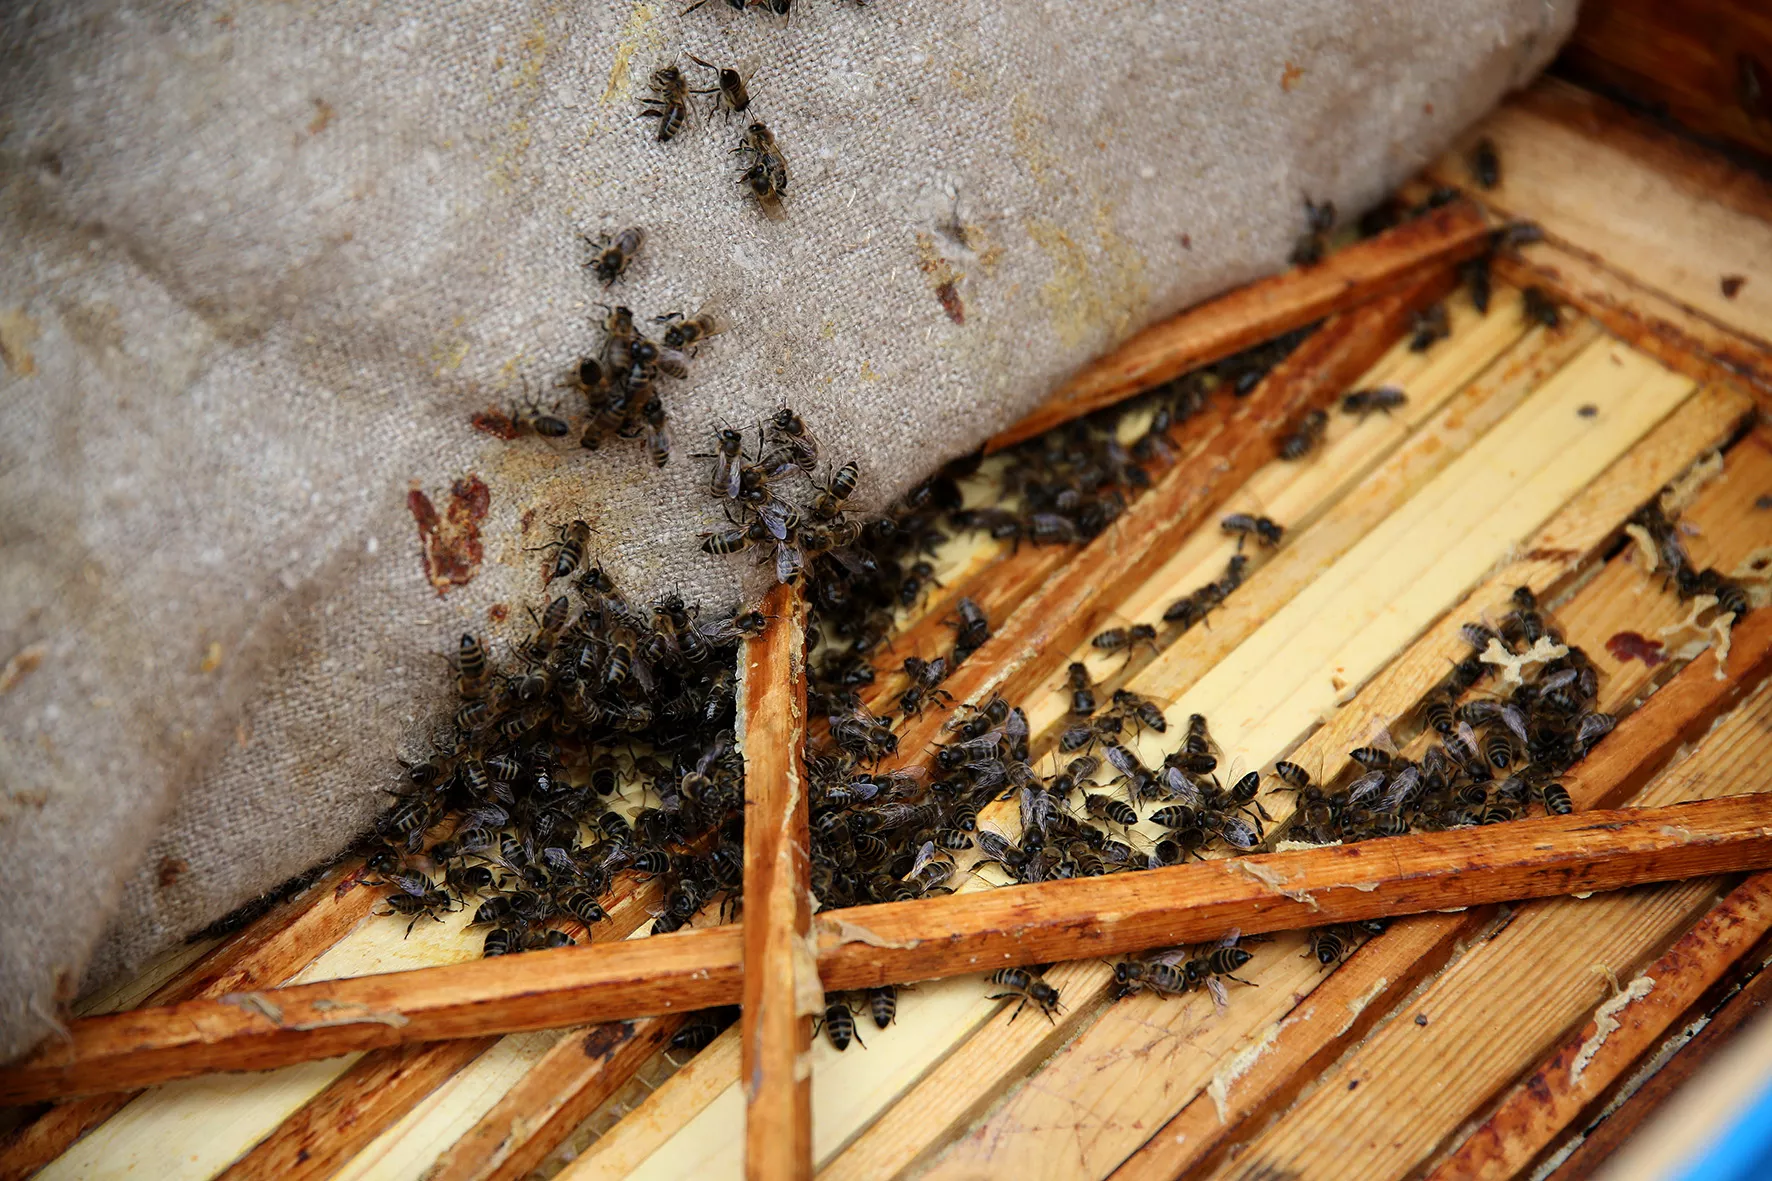 Šaltas šių metų kovas bitininkams nepagailėjo iššūkių. Užtrukusi žiema bites aviliuose užlaikė gerokai ilgiau nei įprasta. A. Barzdžiaus nuotr.